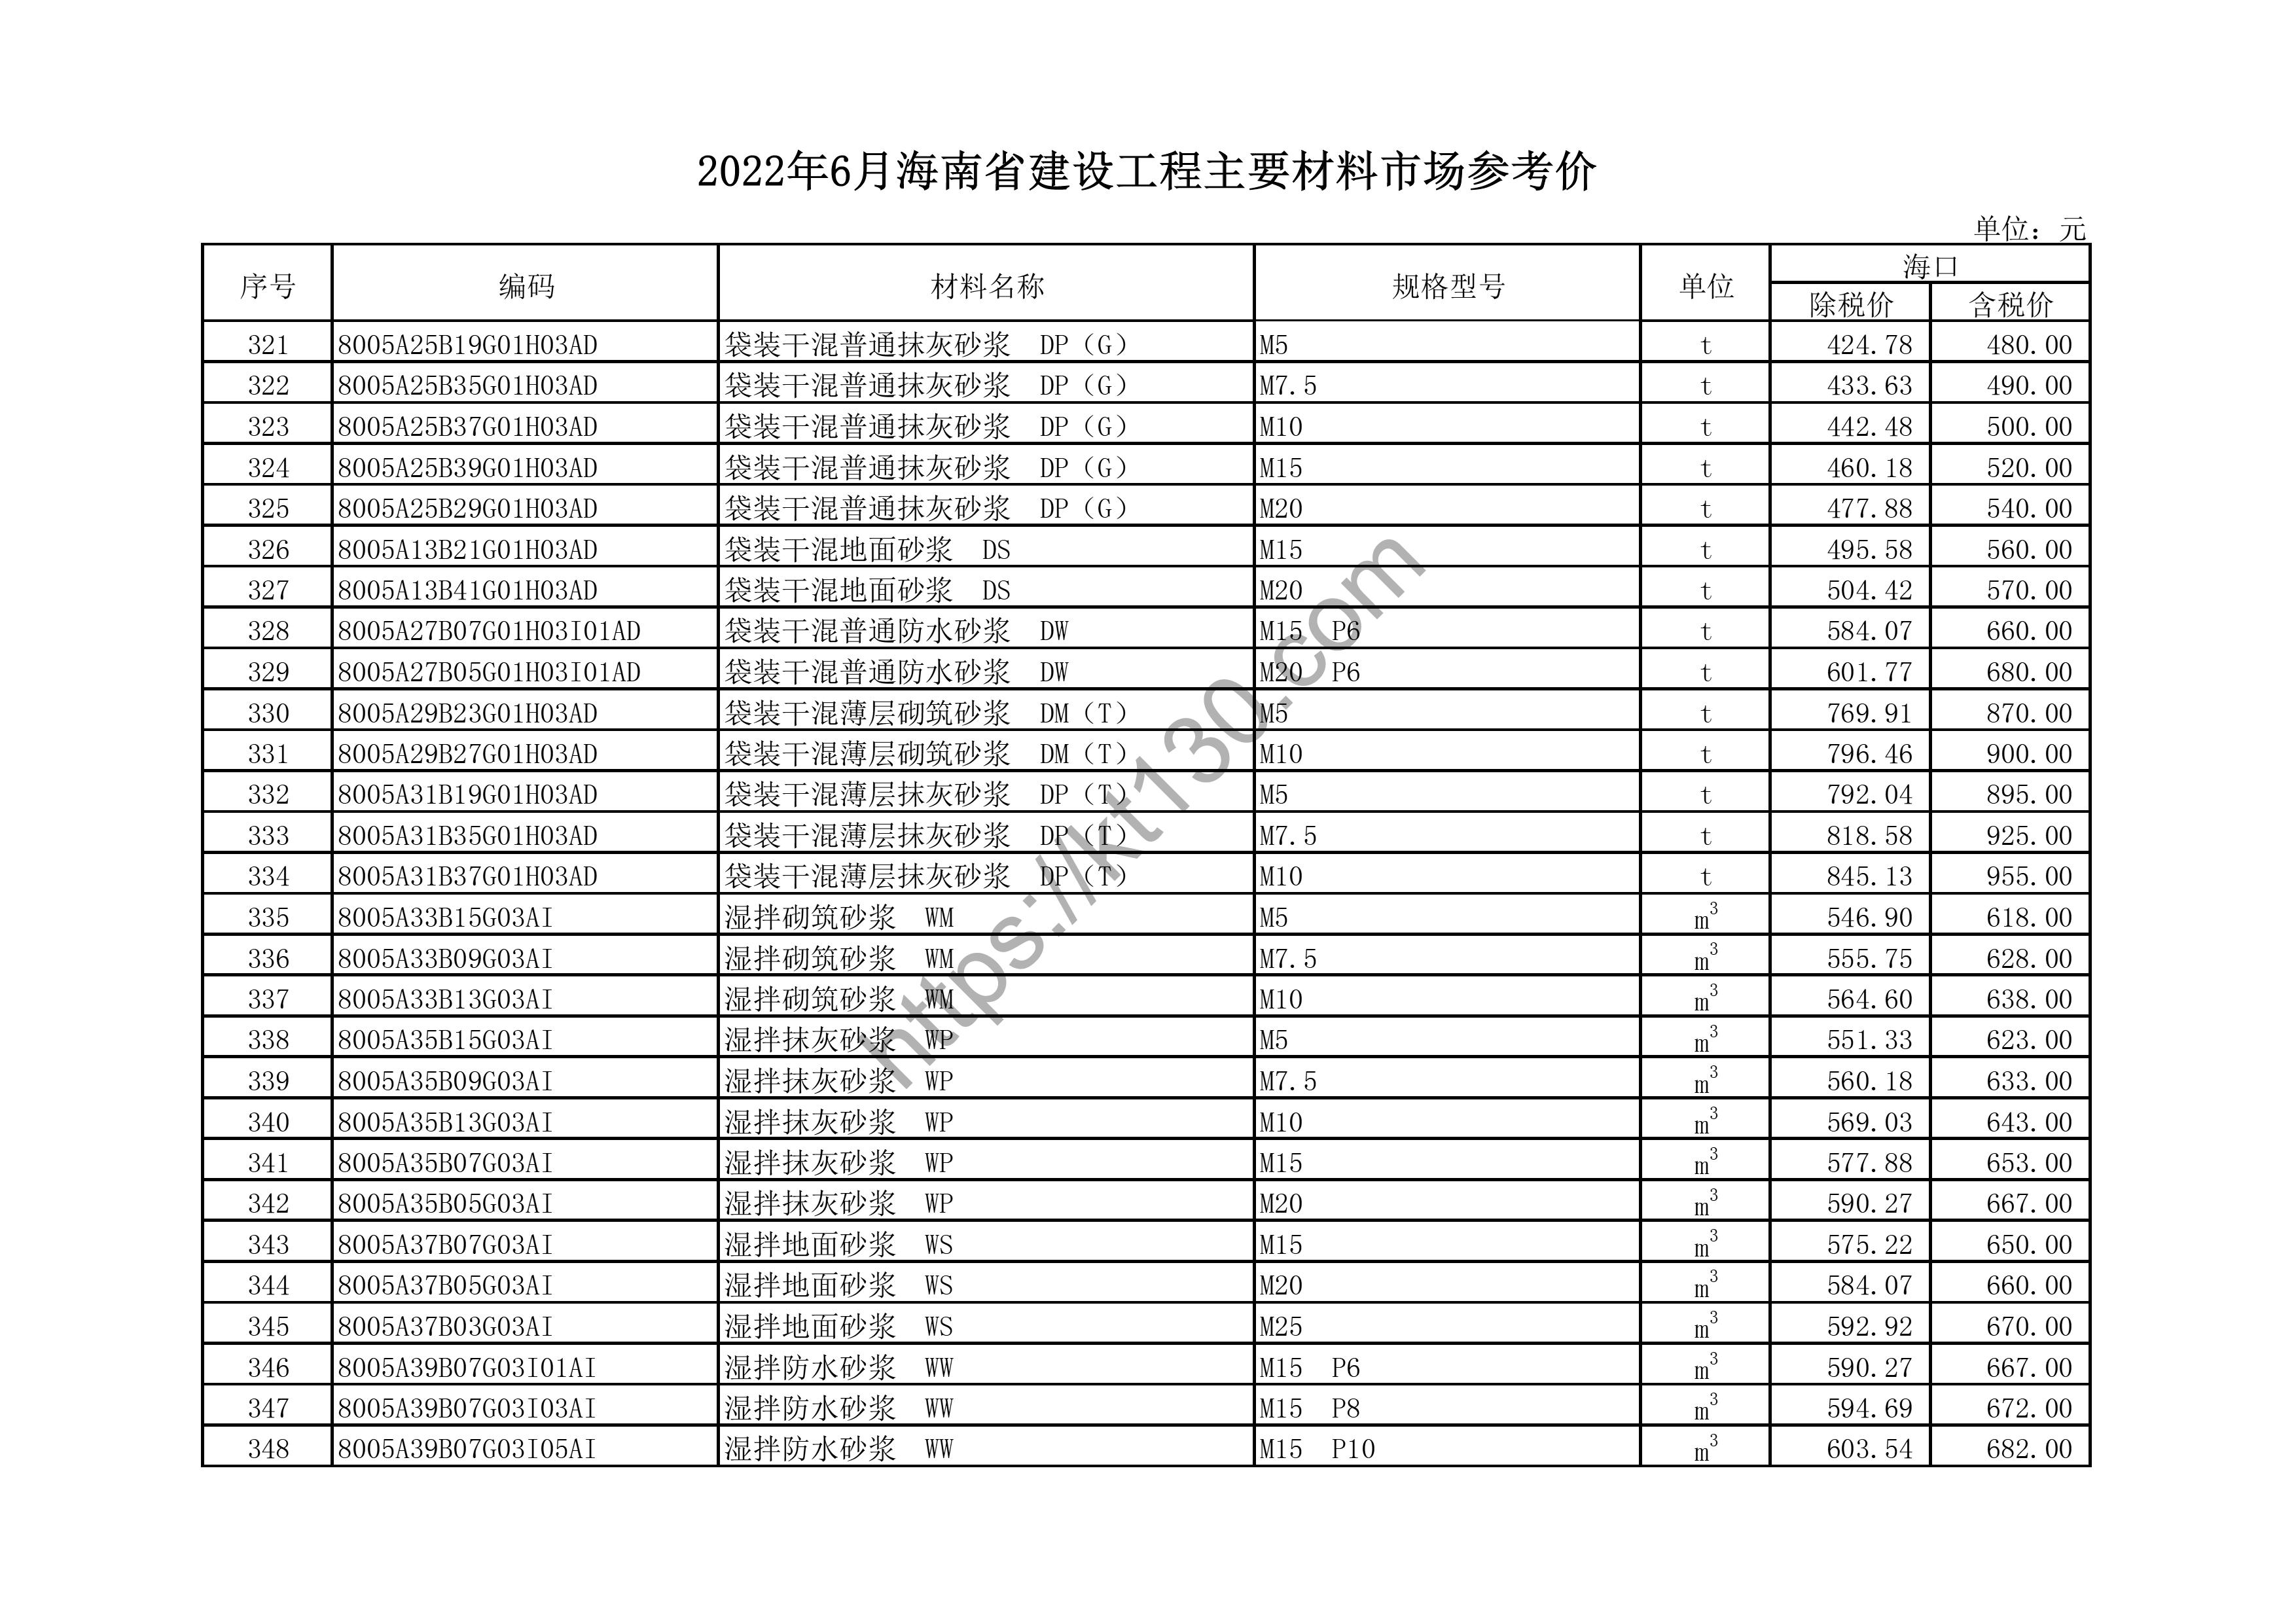 海南省2022年6月建筑材料价_汽柴油、自来水_44435